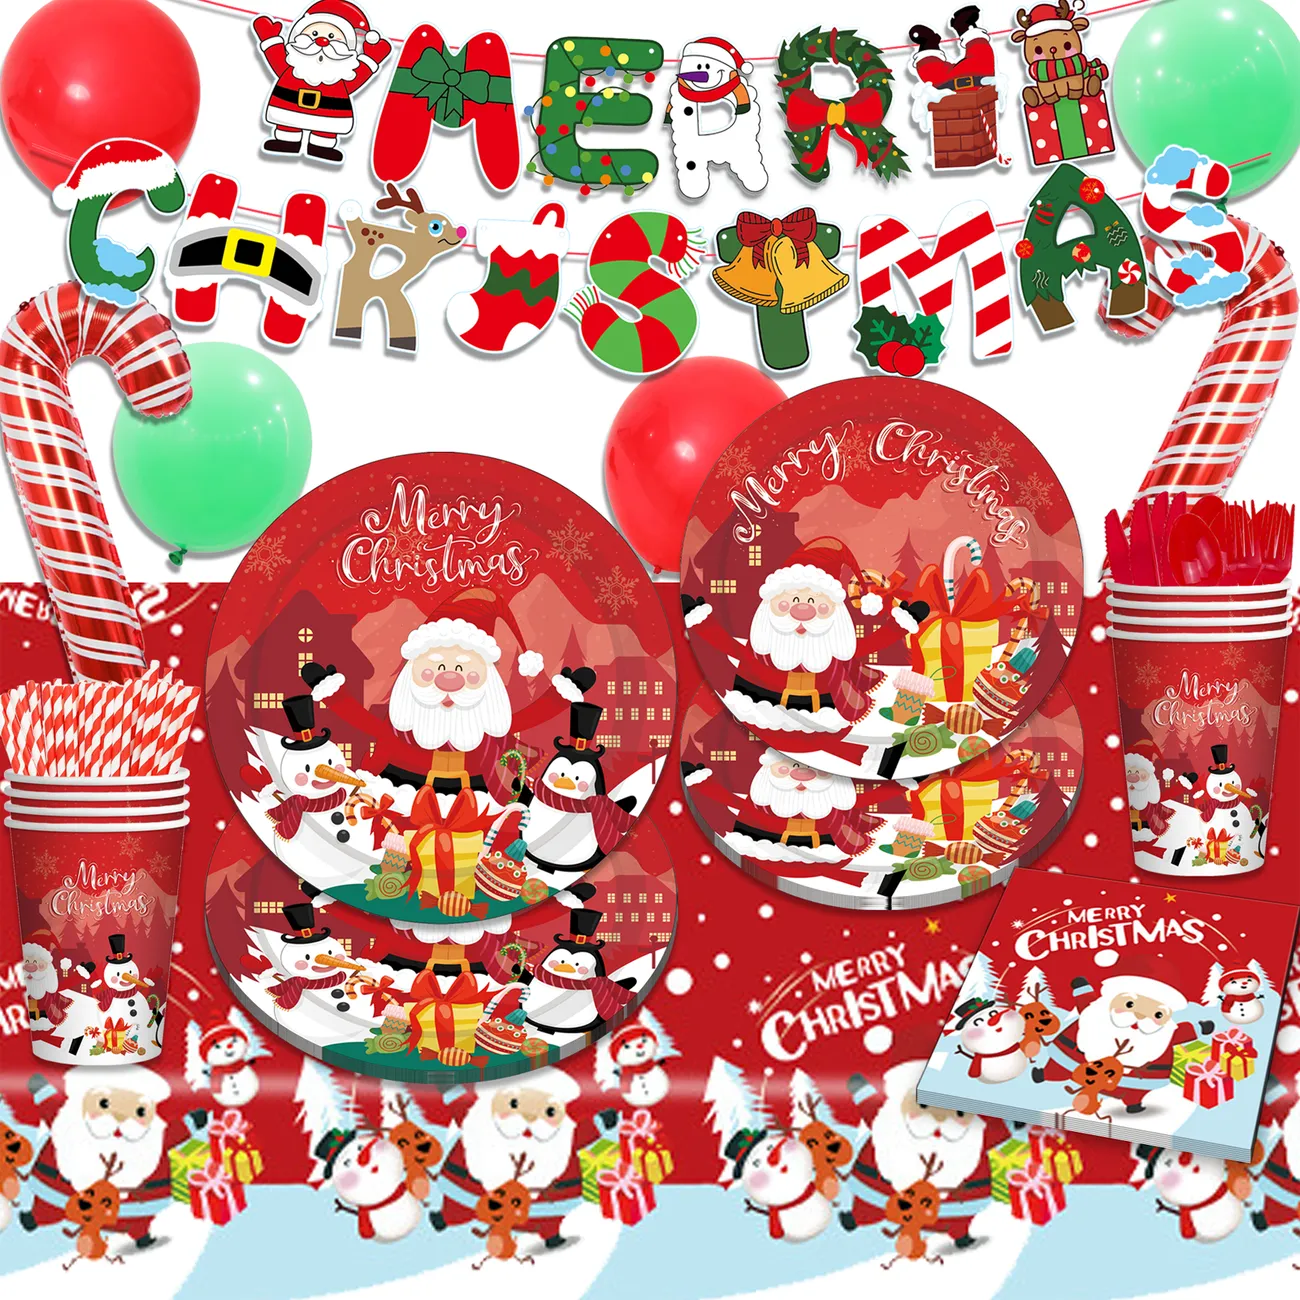 Combo Rotes Cartoon-Weihnachtsmann-Weihnachtsmann-Dekorationsset: Pappteller, Tassen, Tischdecke, Besteck und Luftballons rot/weiß big image 1